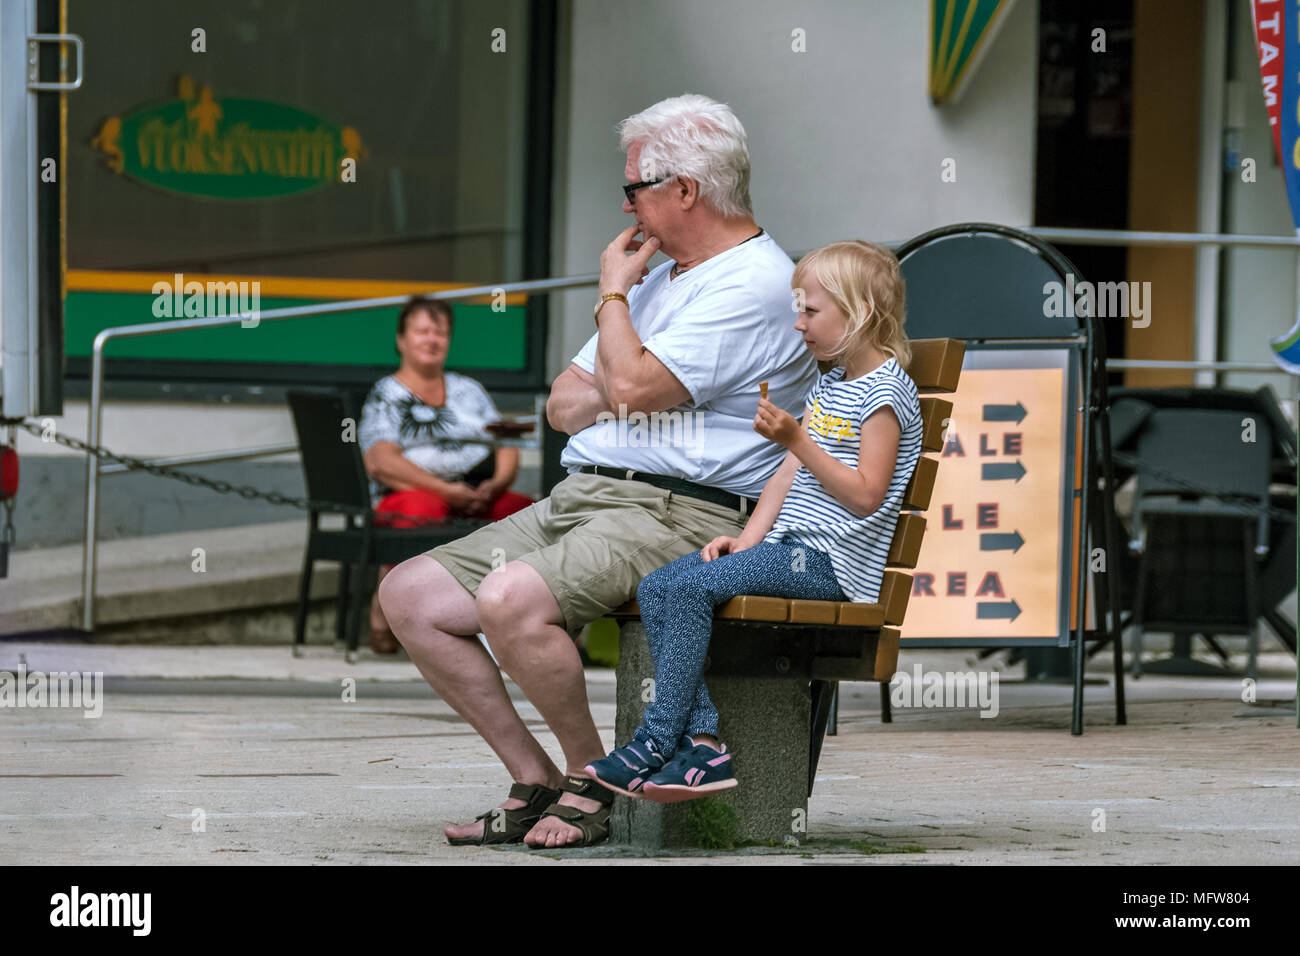 Imatra, Finlande, Juin 24 : Un homme âgé avec des lunettes et une petite fille avec de la crème glacée, assis sur un banc dans le centre de la ville finlandaise d'Imatra Banque D'Images